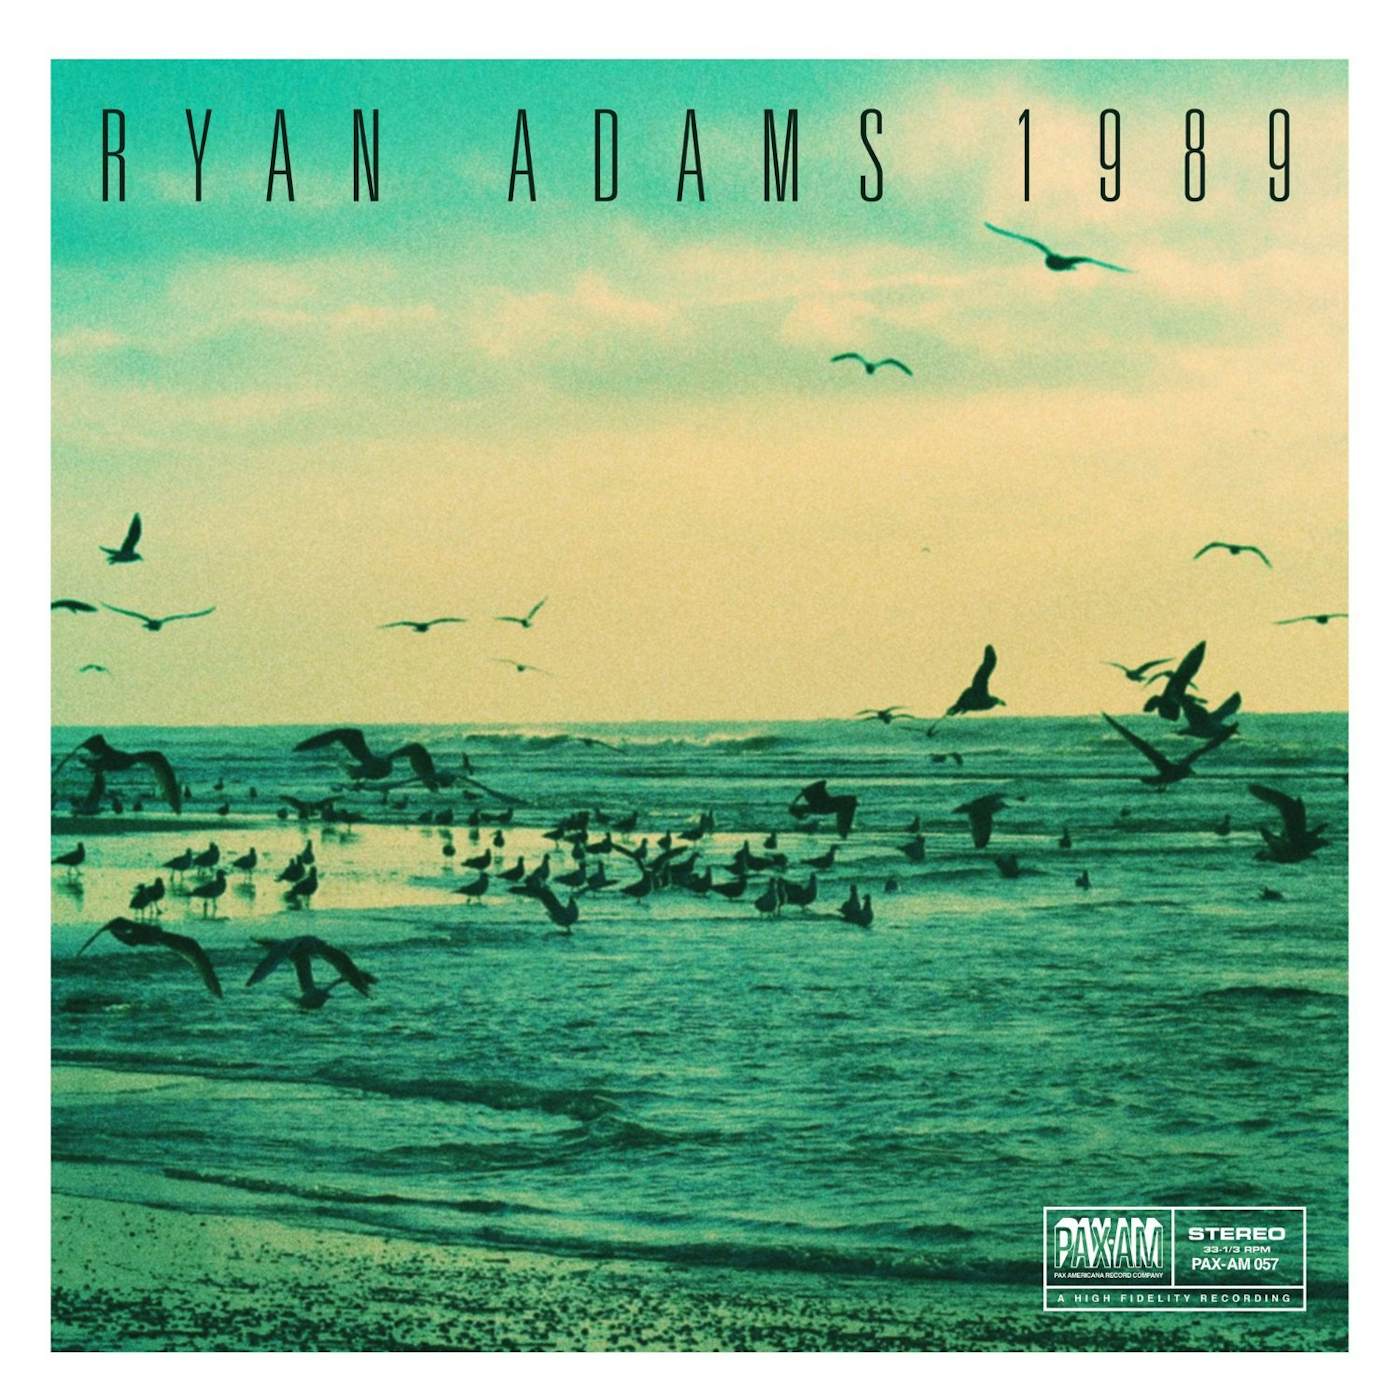 Ryan Adams 1989 Vinyl Record